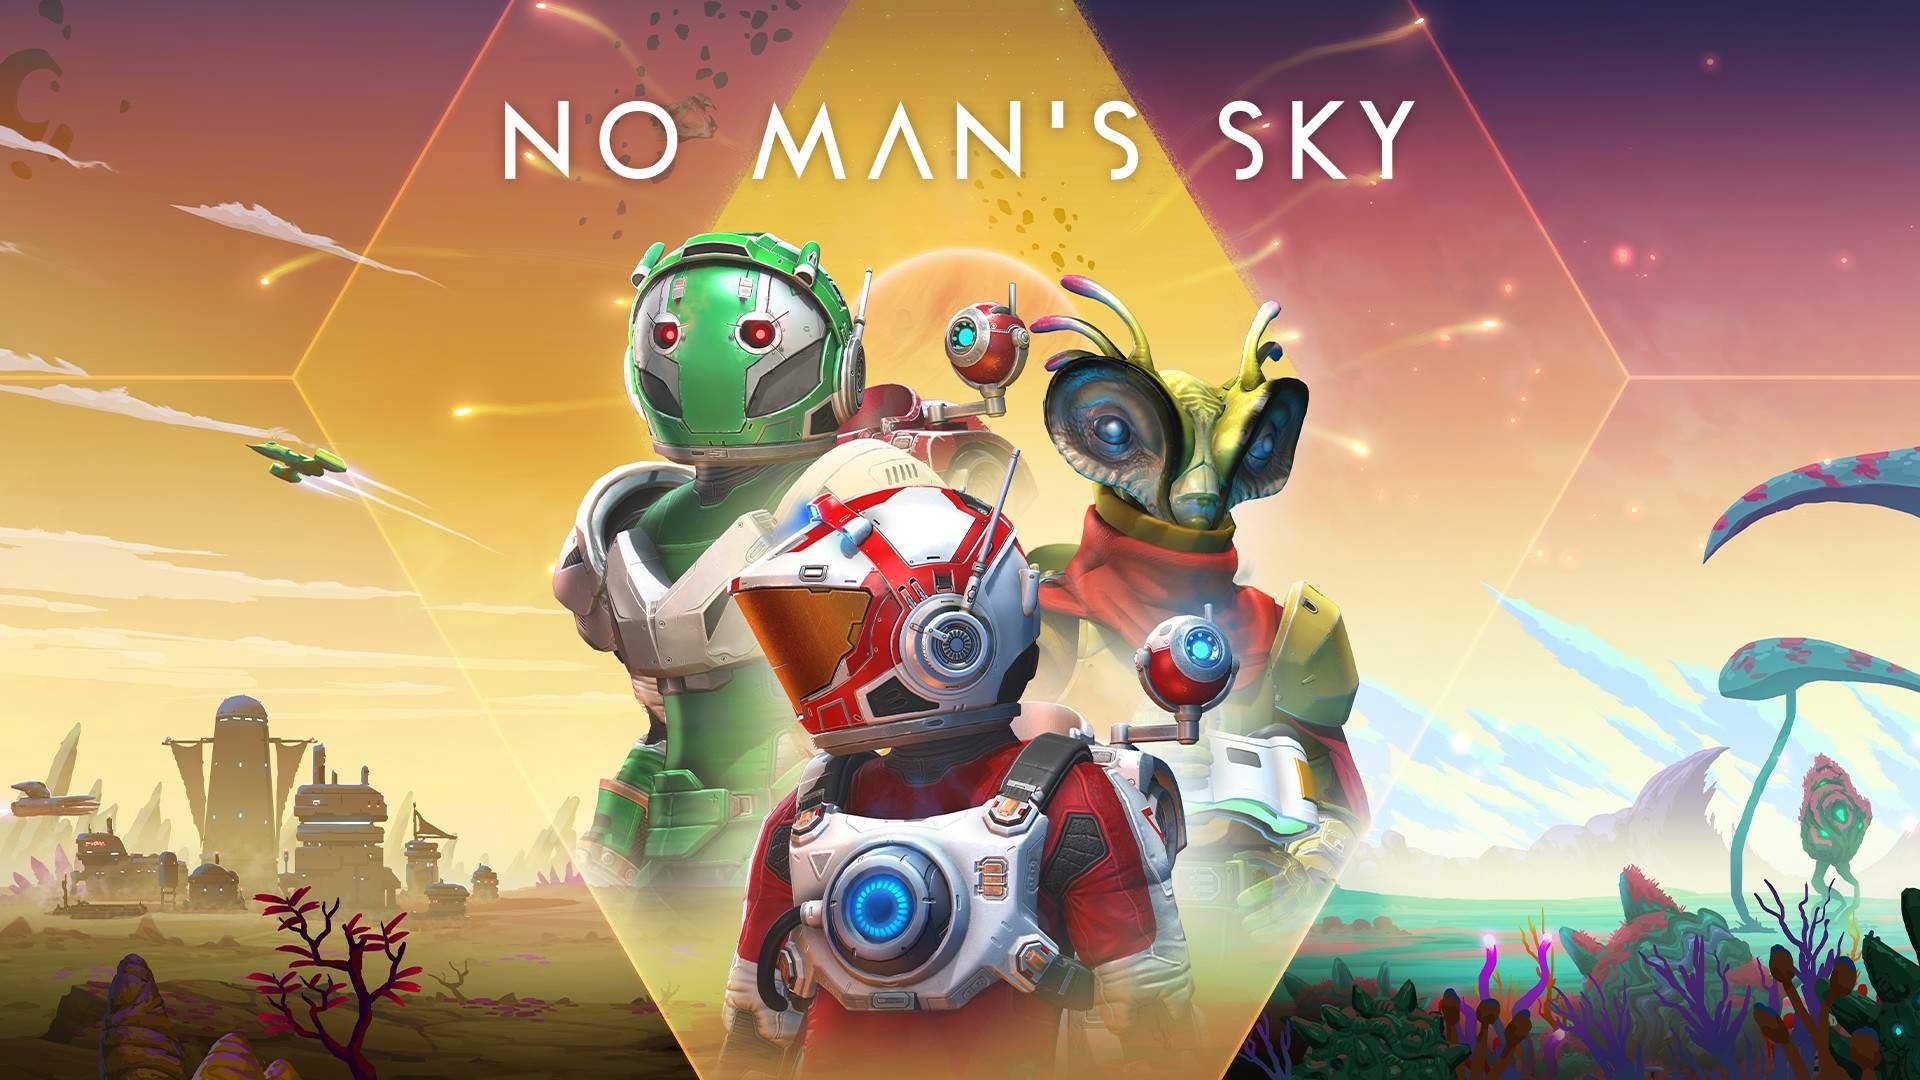 والپیپر رسمی بازی No Man's Sky استودیو Hello Games با نمایش جلوه های مختلف حیات در کهکشان ها